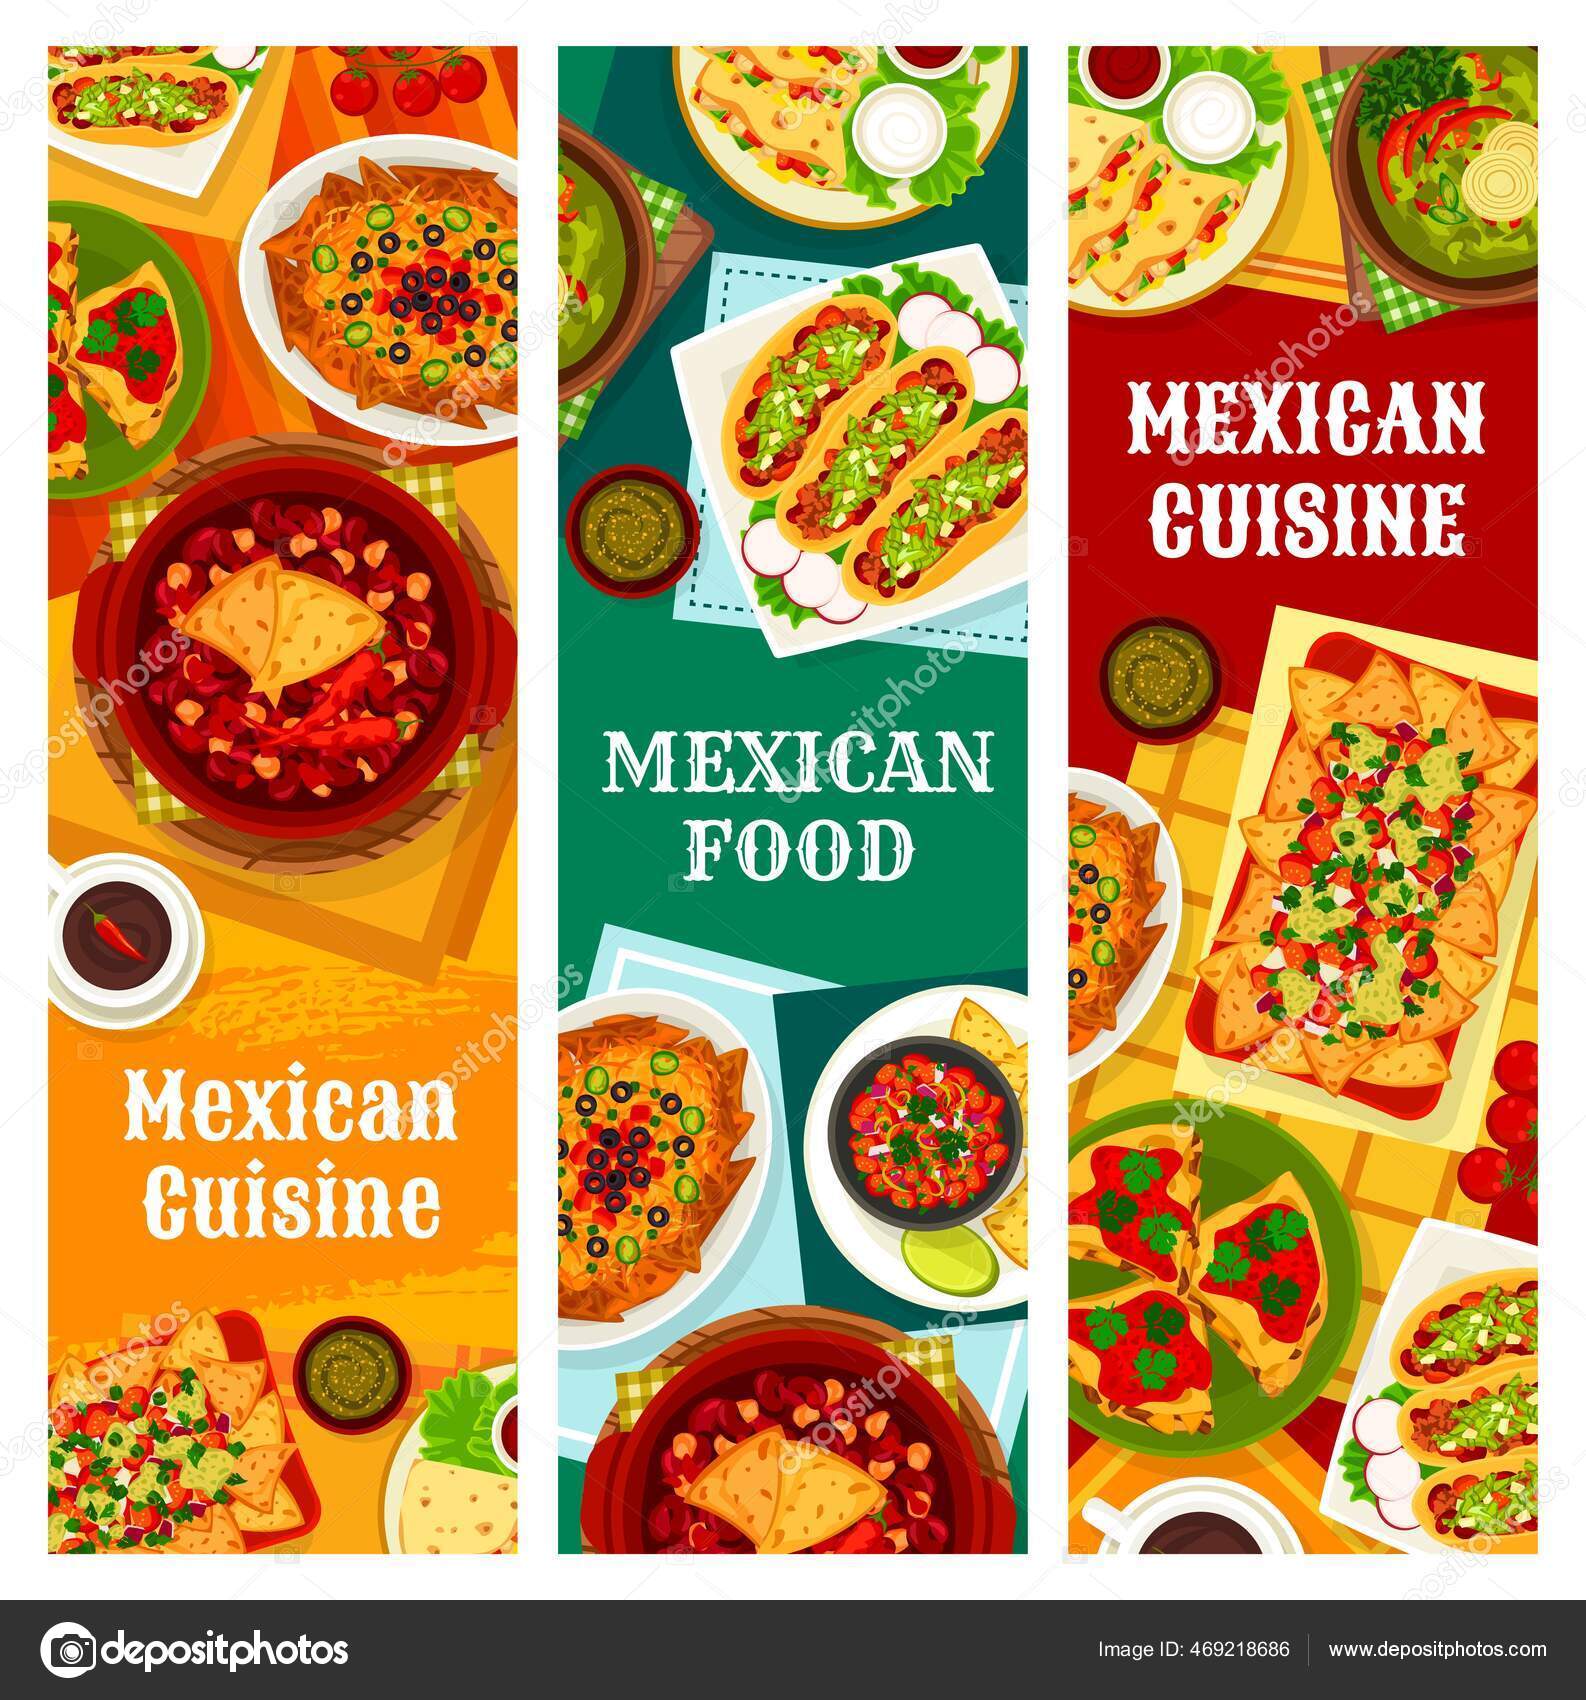 Мексика [СПЕЦВЫПУСК] — мексиканская кухня | Национальная еда Мексики